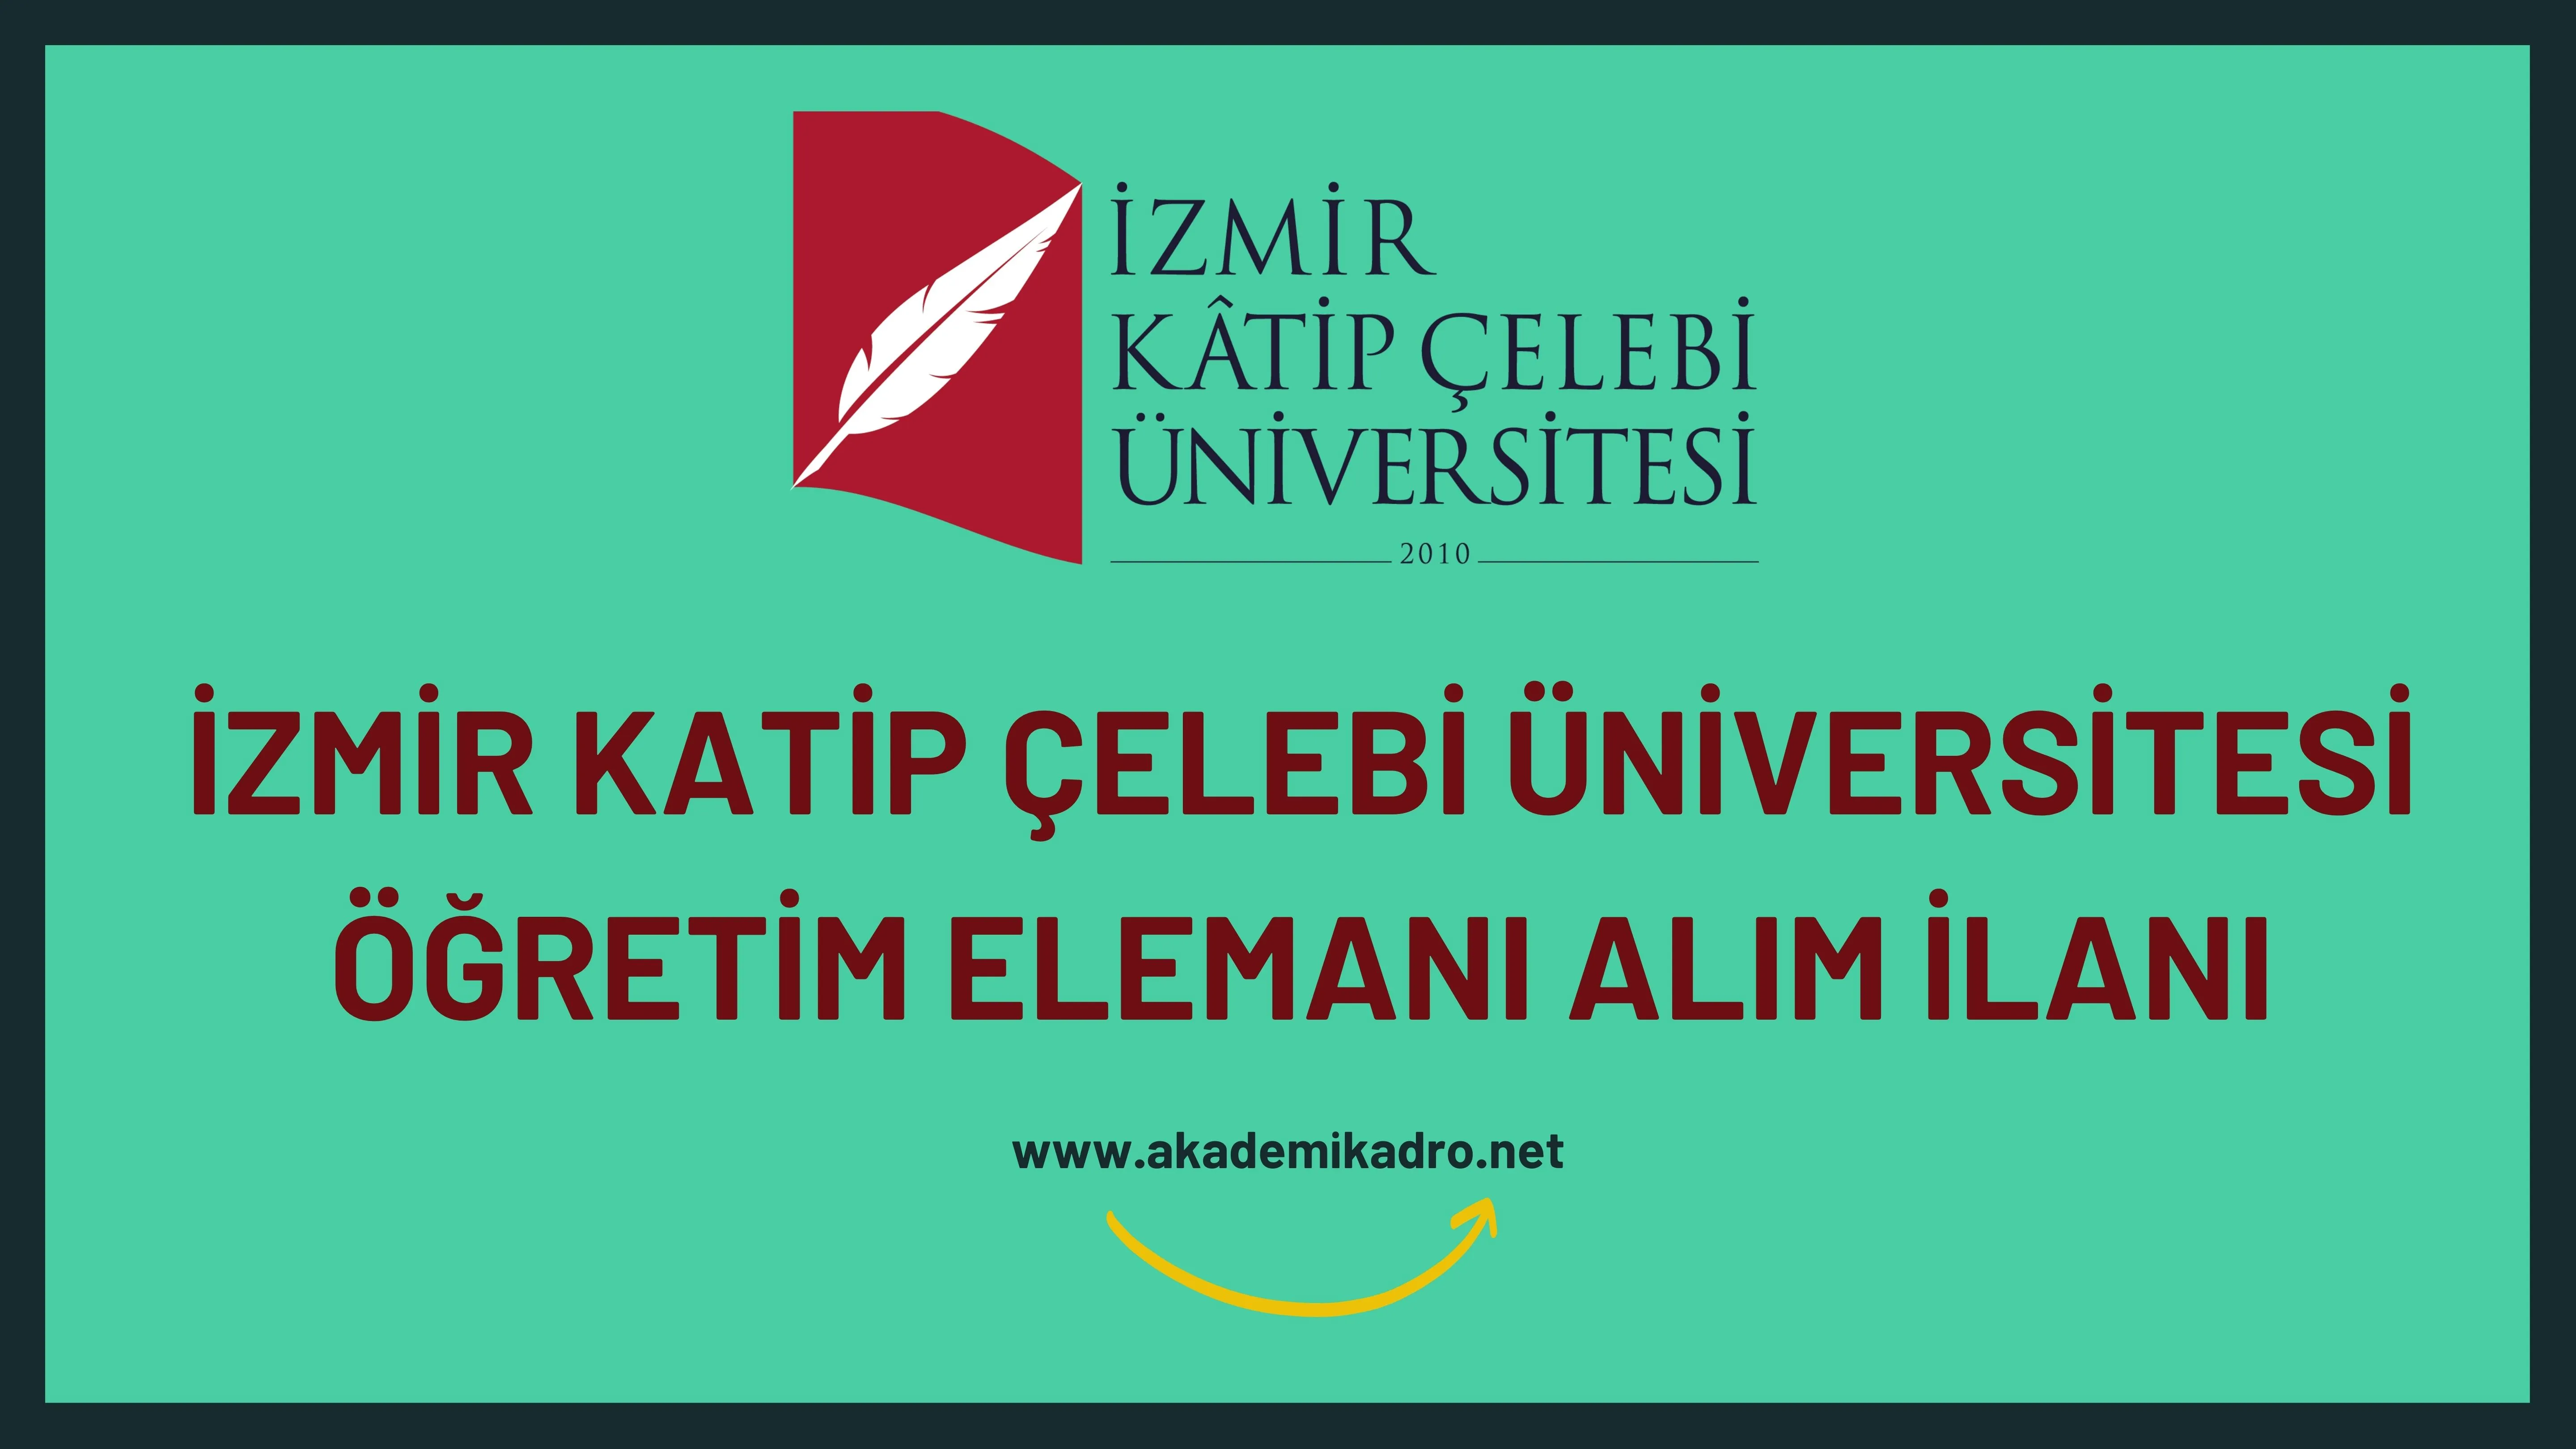 İzmir Kâtip Çelebi Üniversitesi 3 Öğretim Görevlisi, 12 Araştırma görevlisi ve birçok alandan 20 Öğretim üyesi alacak. Son başvuru tarihi 10 Ocak 2023.